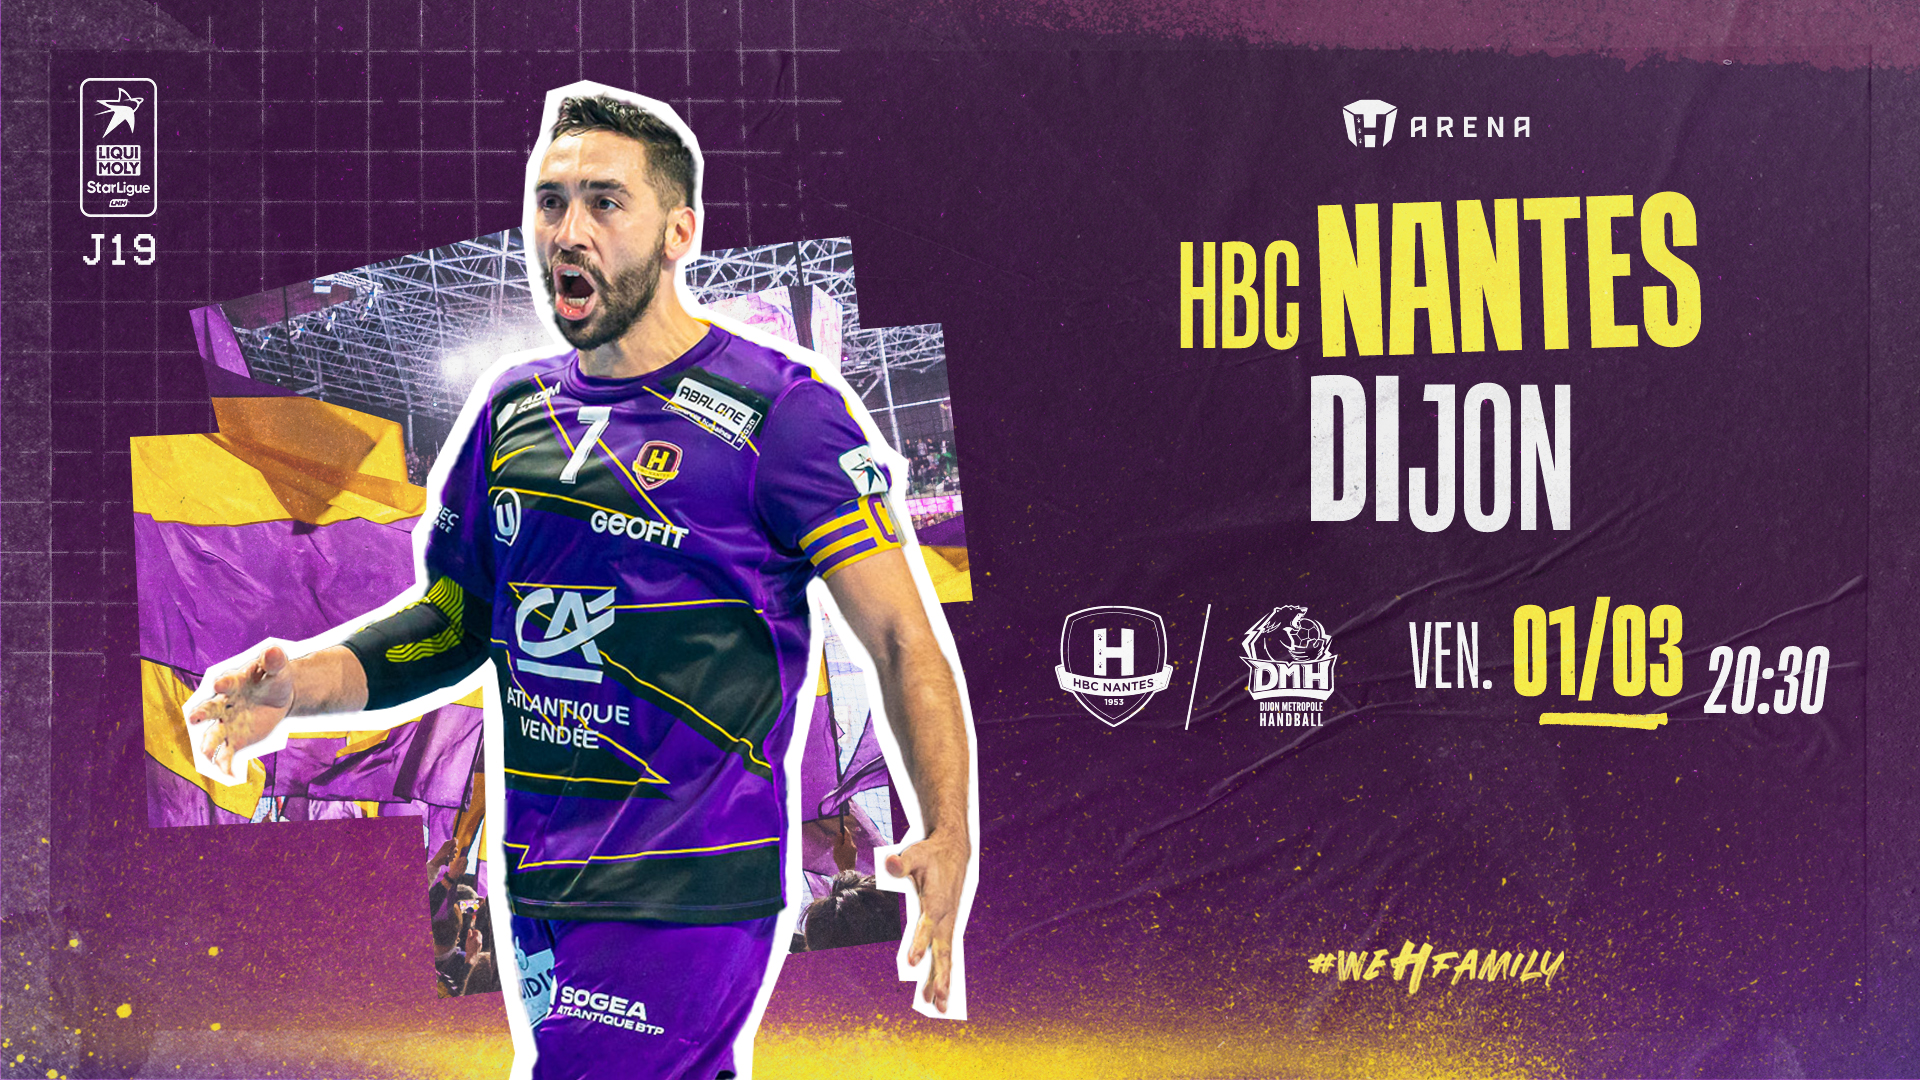 HBC Nantes - Dijon : Programme de match